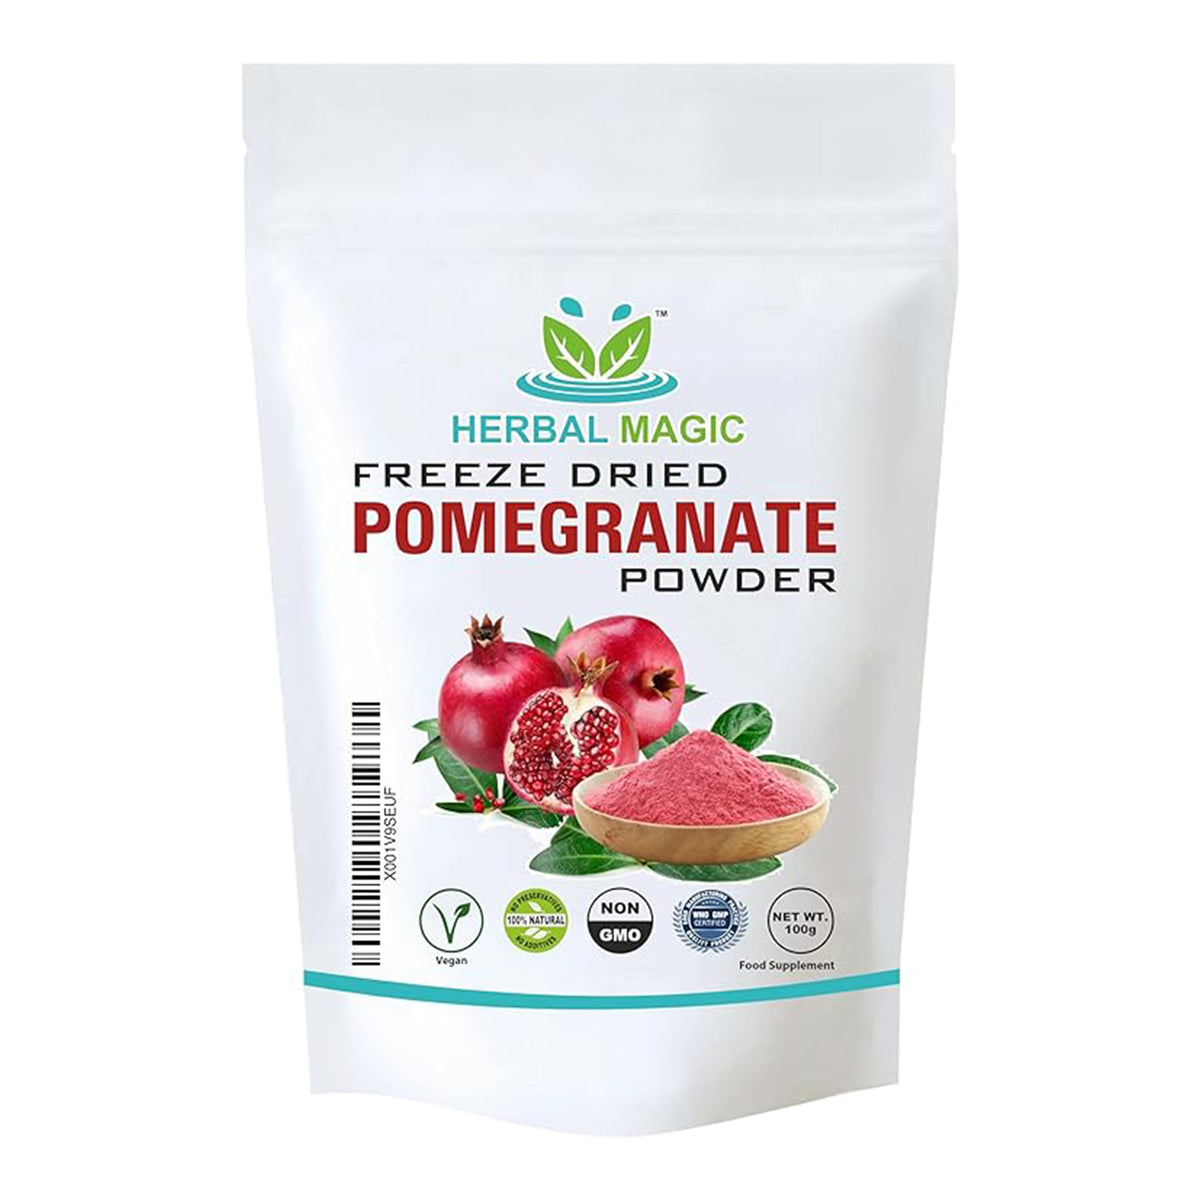 Freezed dried Pomogranate